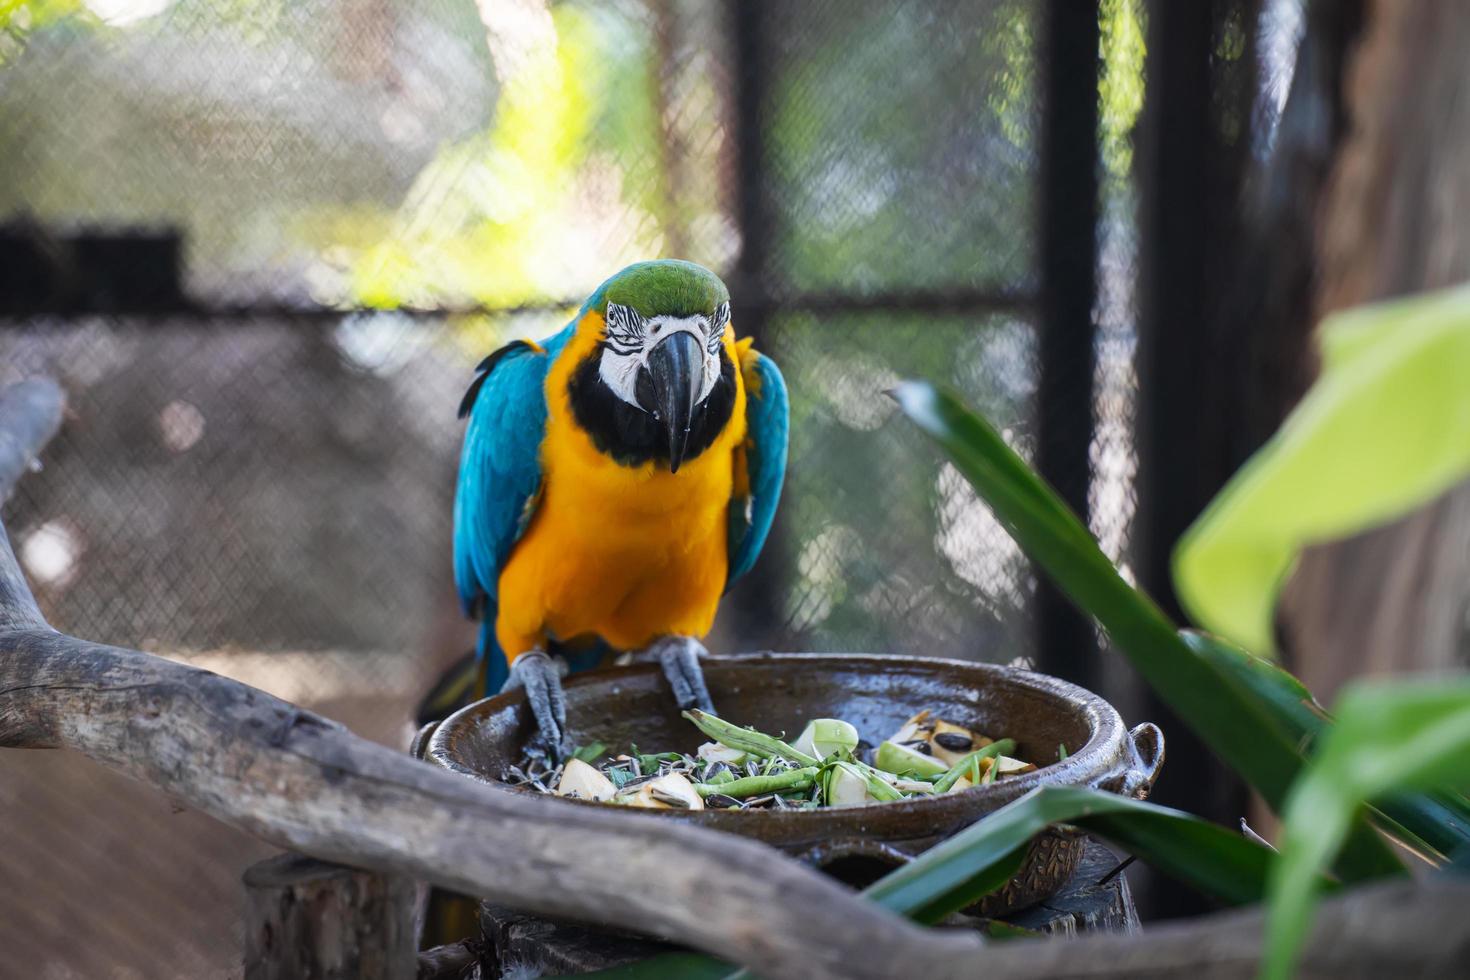 nahaufnahme von macawcute niedlichen vögeln und bunt von wild lebenden tieren, blauen und gelben aras, die in die kamera blicken, tierschutz und ökosystemschutzkonzept. foto